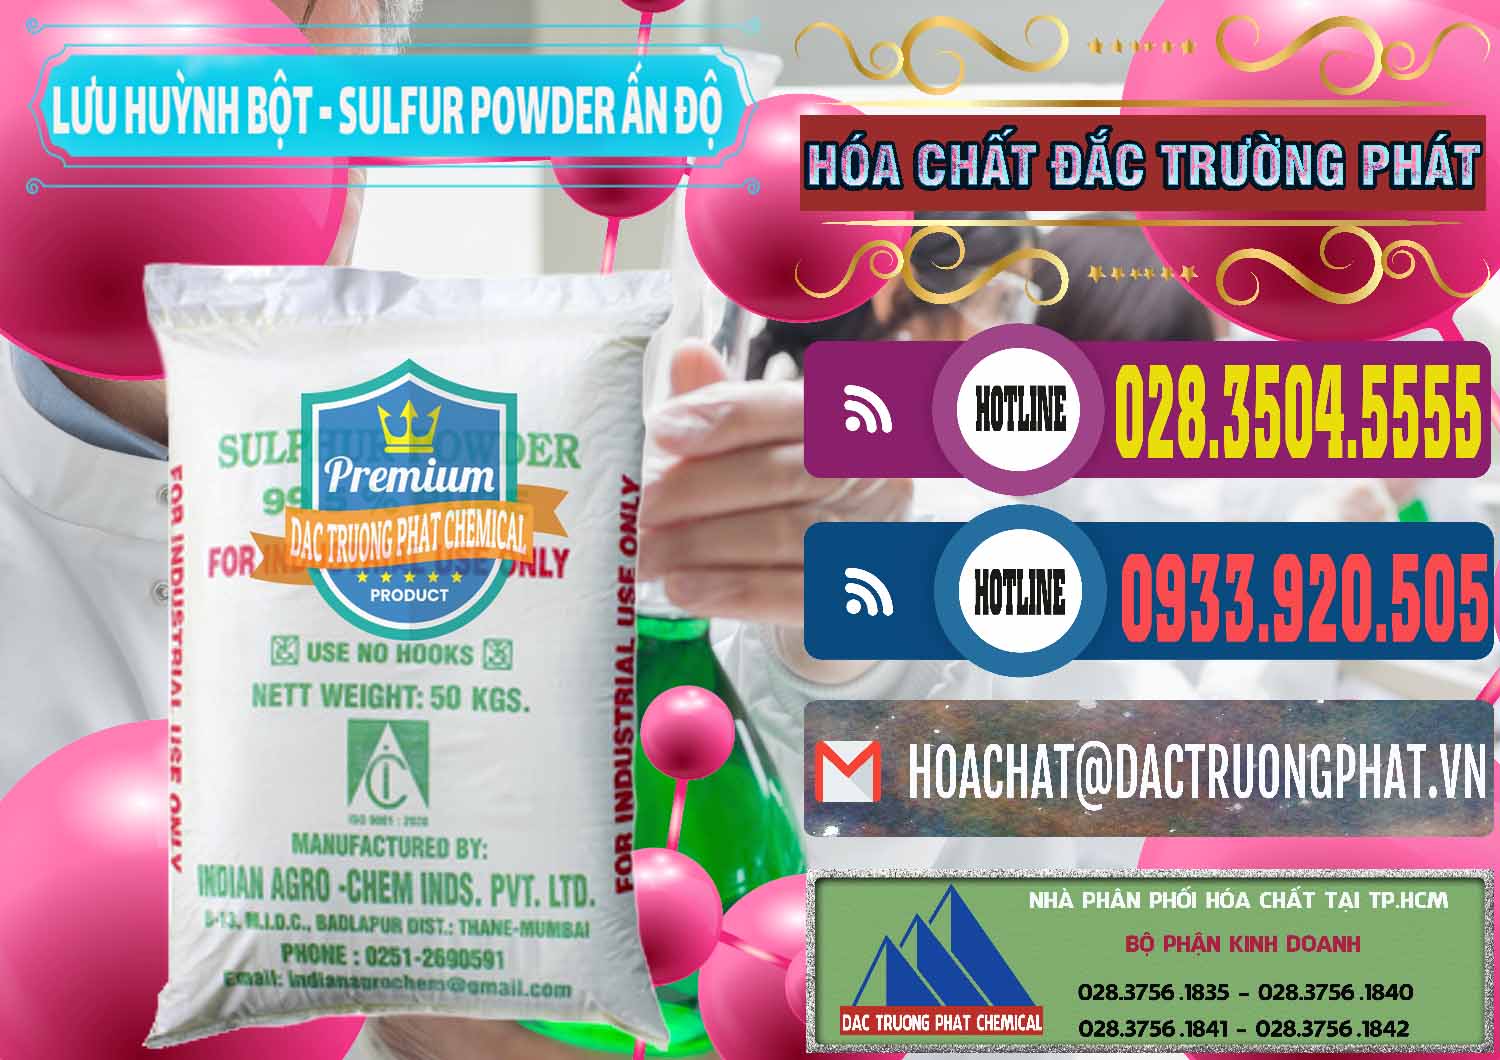 Nơi chuyên cung cấp - bán Lưu huỳnh Bột - Sulfur Powder Ấn Độ India - 0347 - Nơi chuyên cung cấp - bán hóa chất tại TP.HCM - muabanhoachat.com.vn